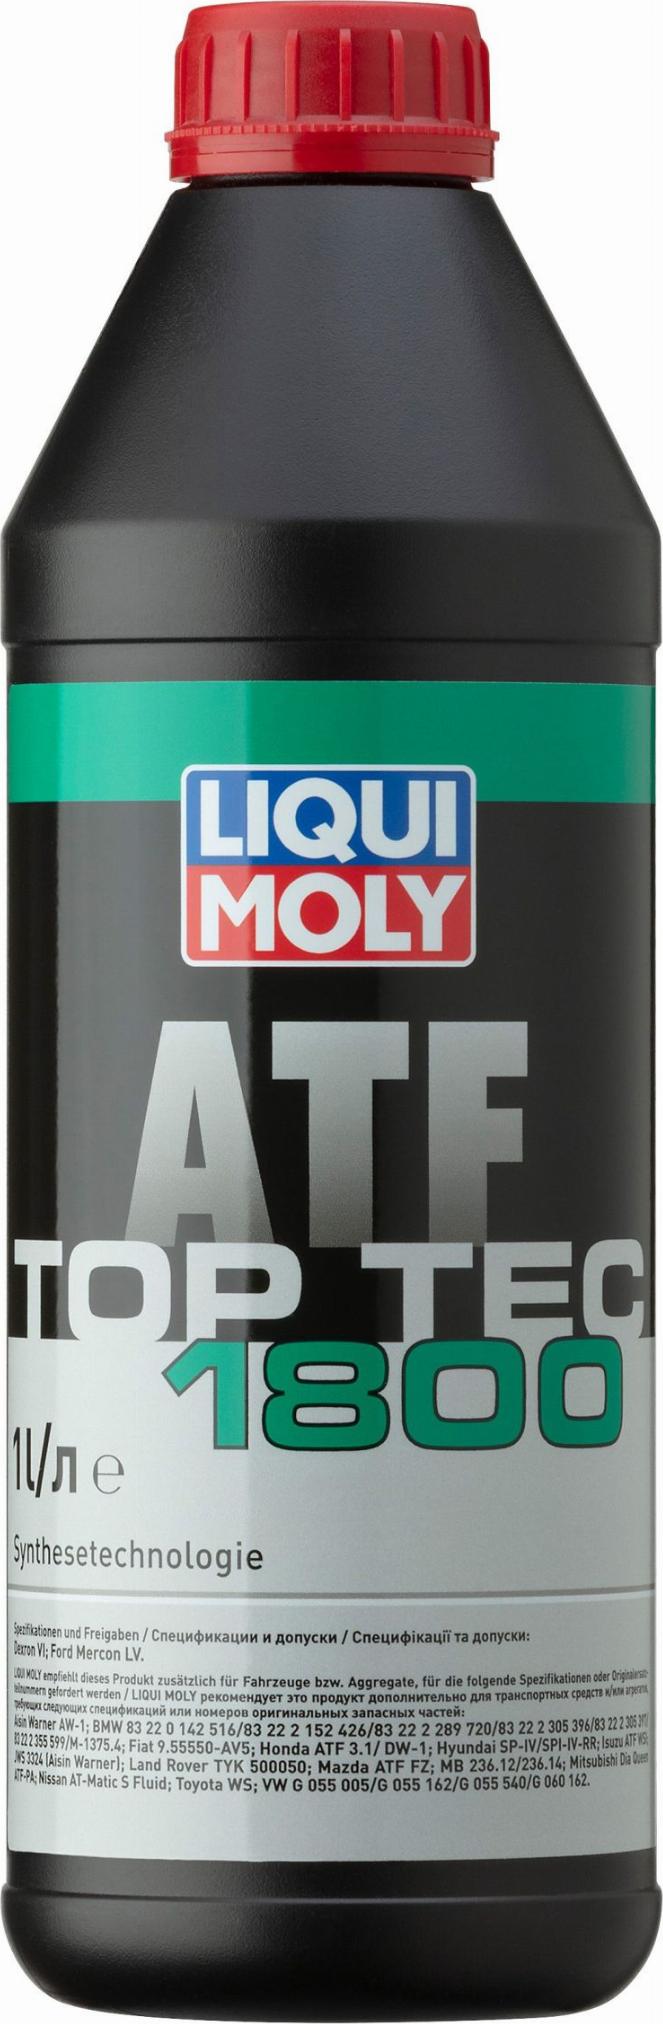 Liqui Moly 2381 - Масло транcмиссионное Liqui Moly Top Tec ATF 1800 - 1 литр для АКП (Dexron VI, Mercon LV, SP IV, Mat autodif.ru